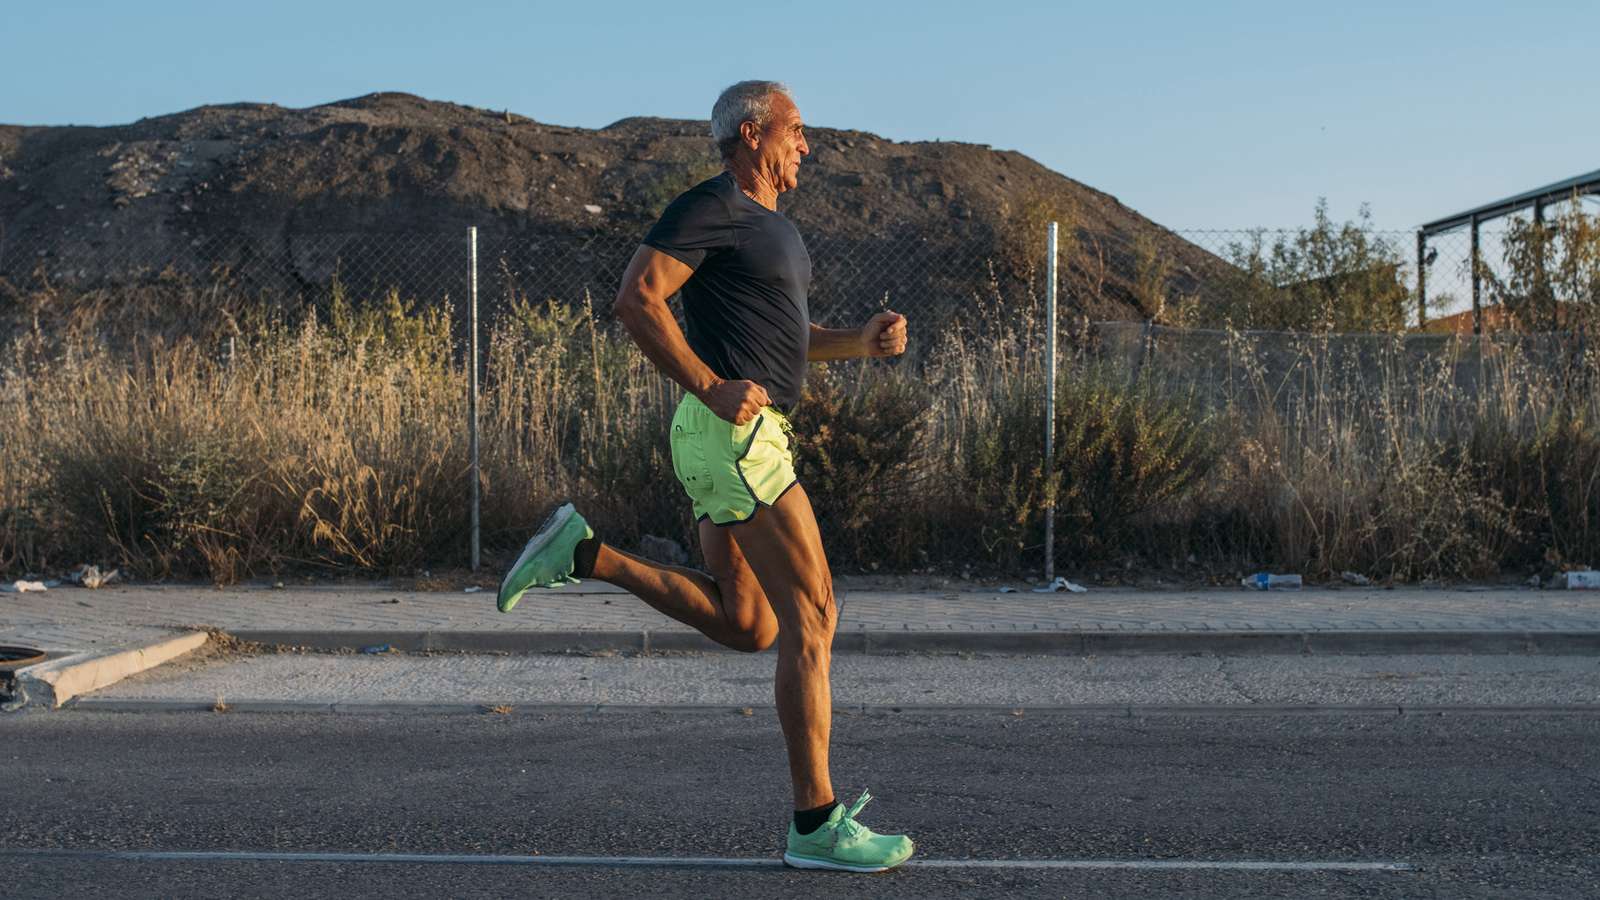 Laufen ist gesund - Joggen noch mit 70 Jahren